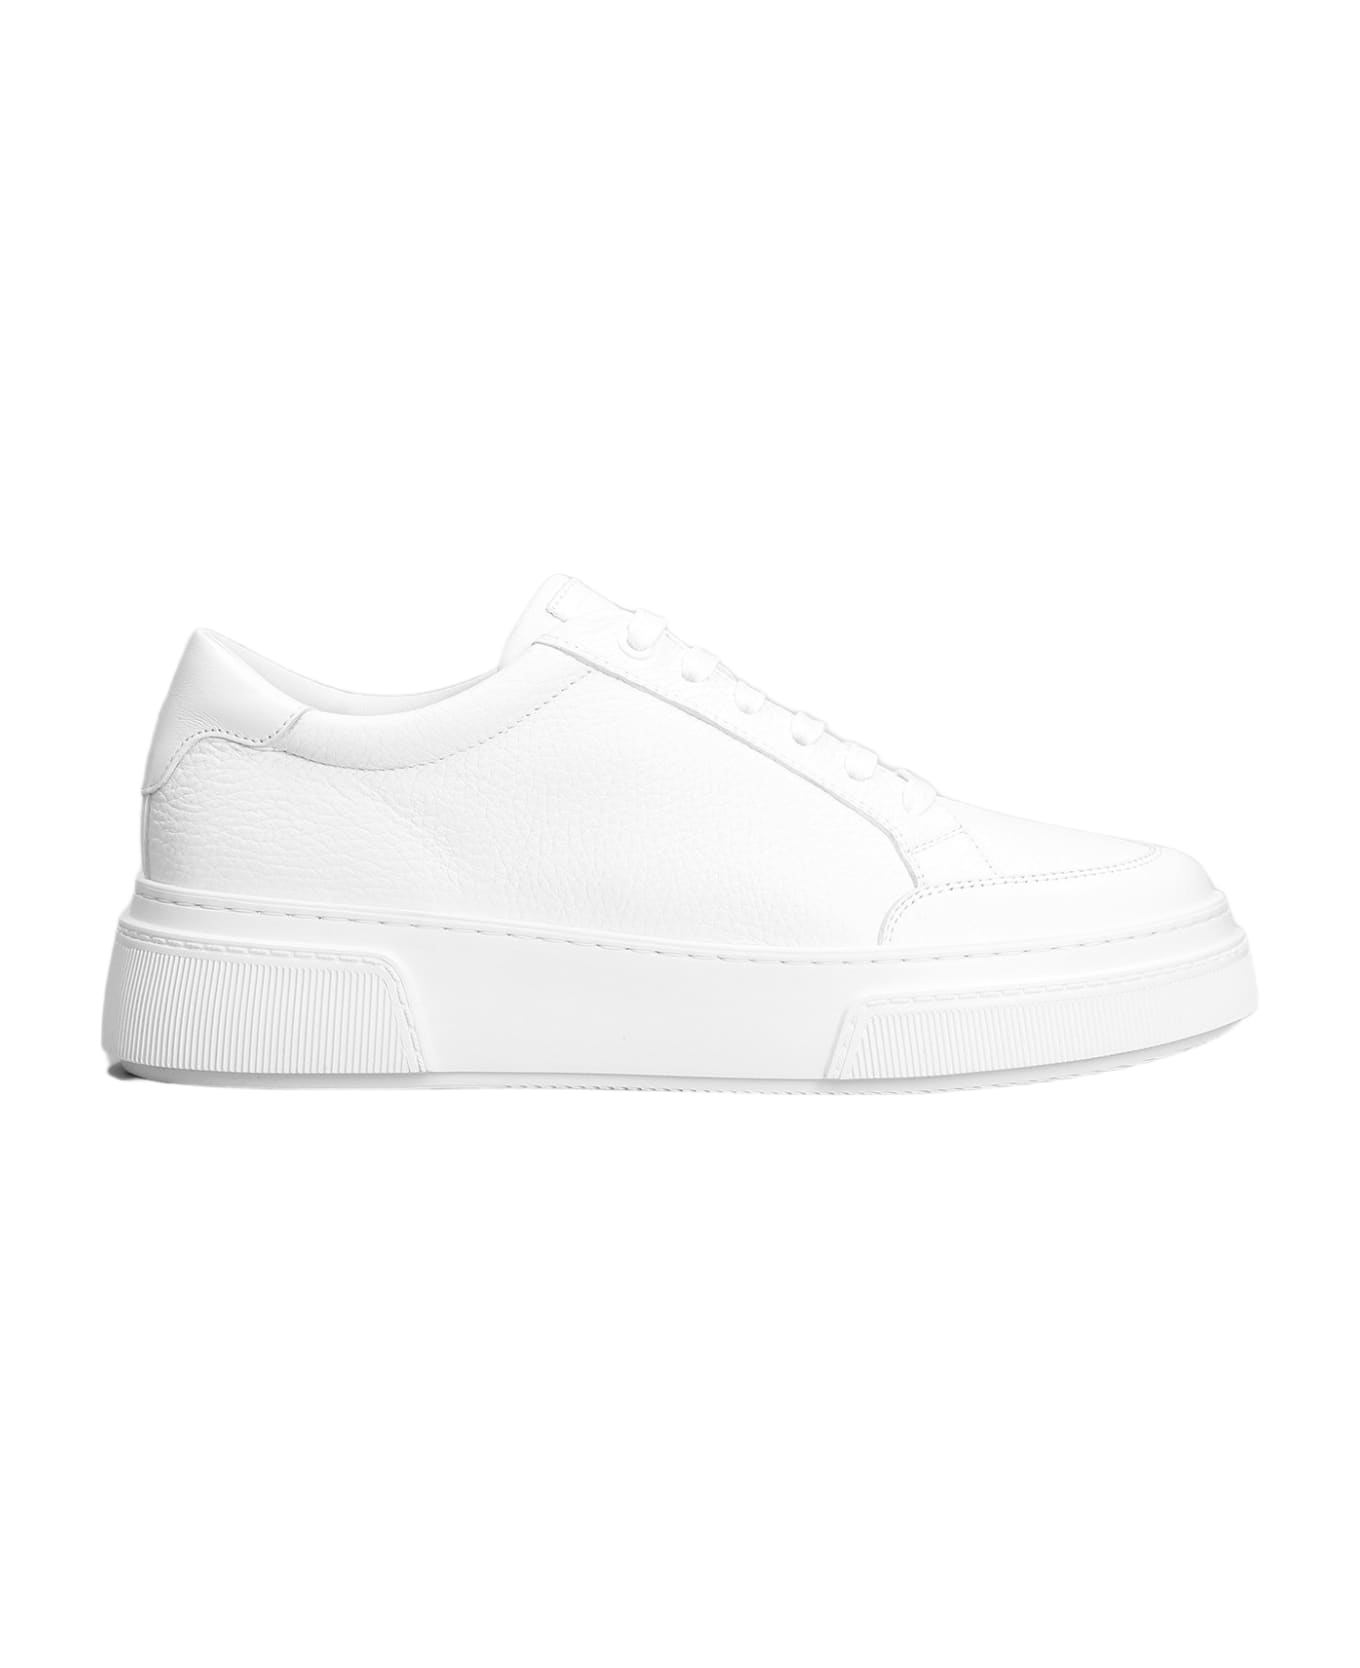 Giorgio Armani Sneakers In White Leather - white